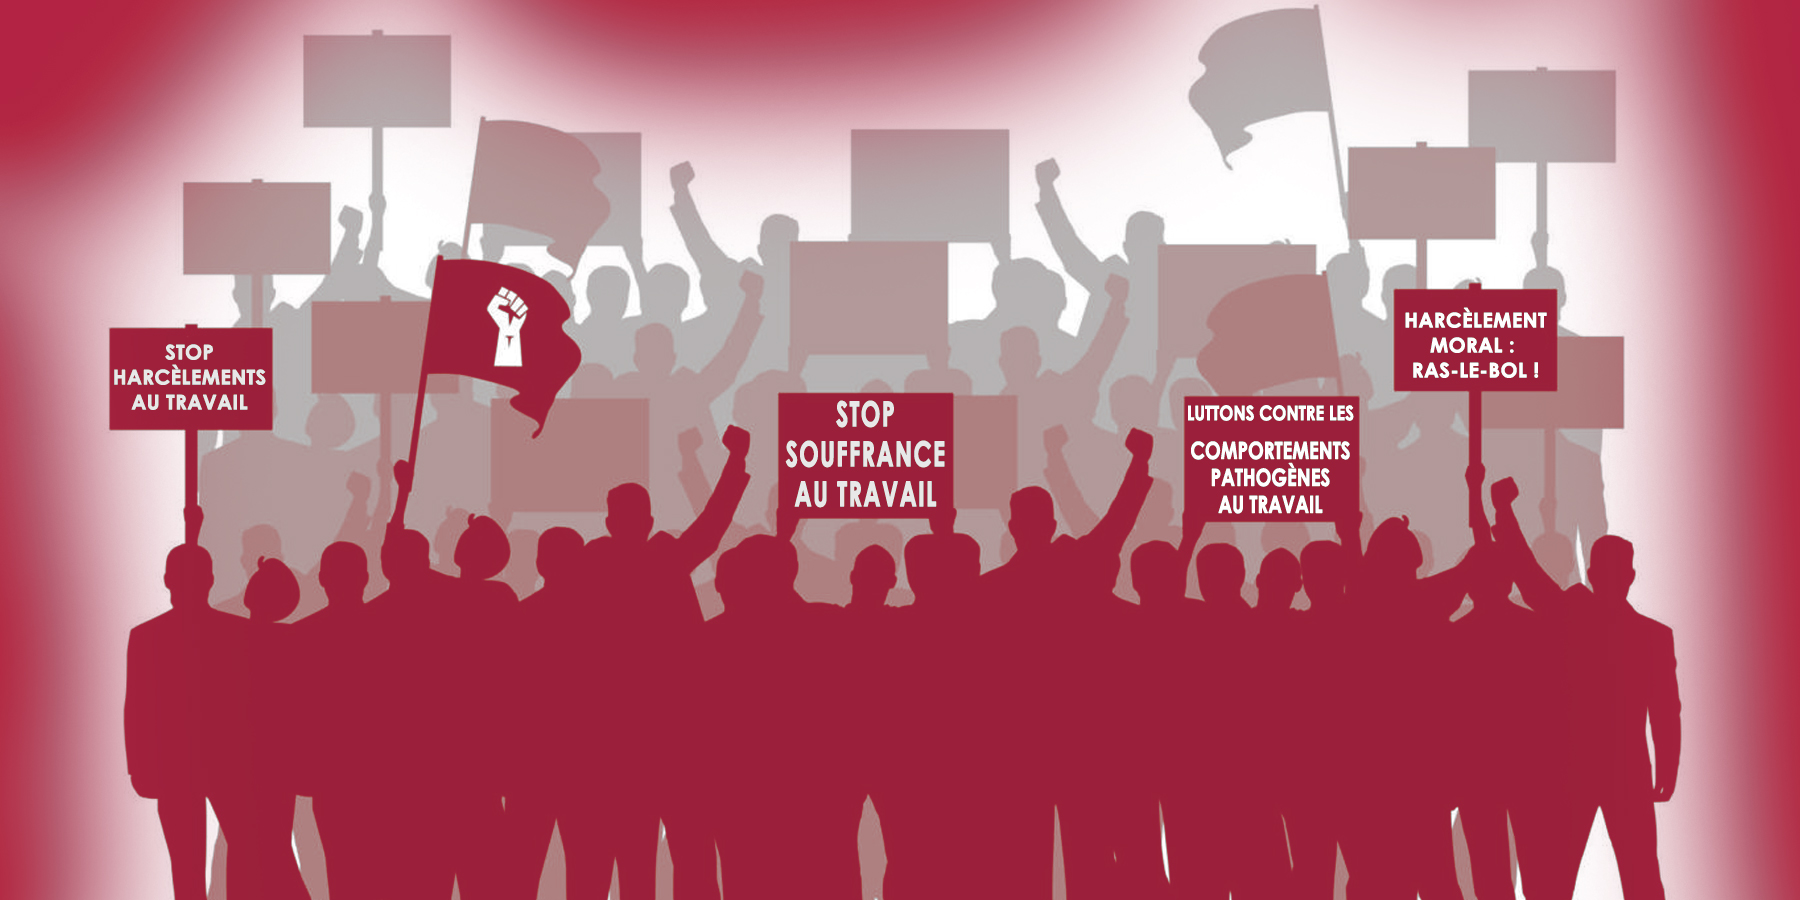 syndicats et souffrance au travail - Manifestations, lutte contre harcèlement